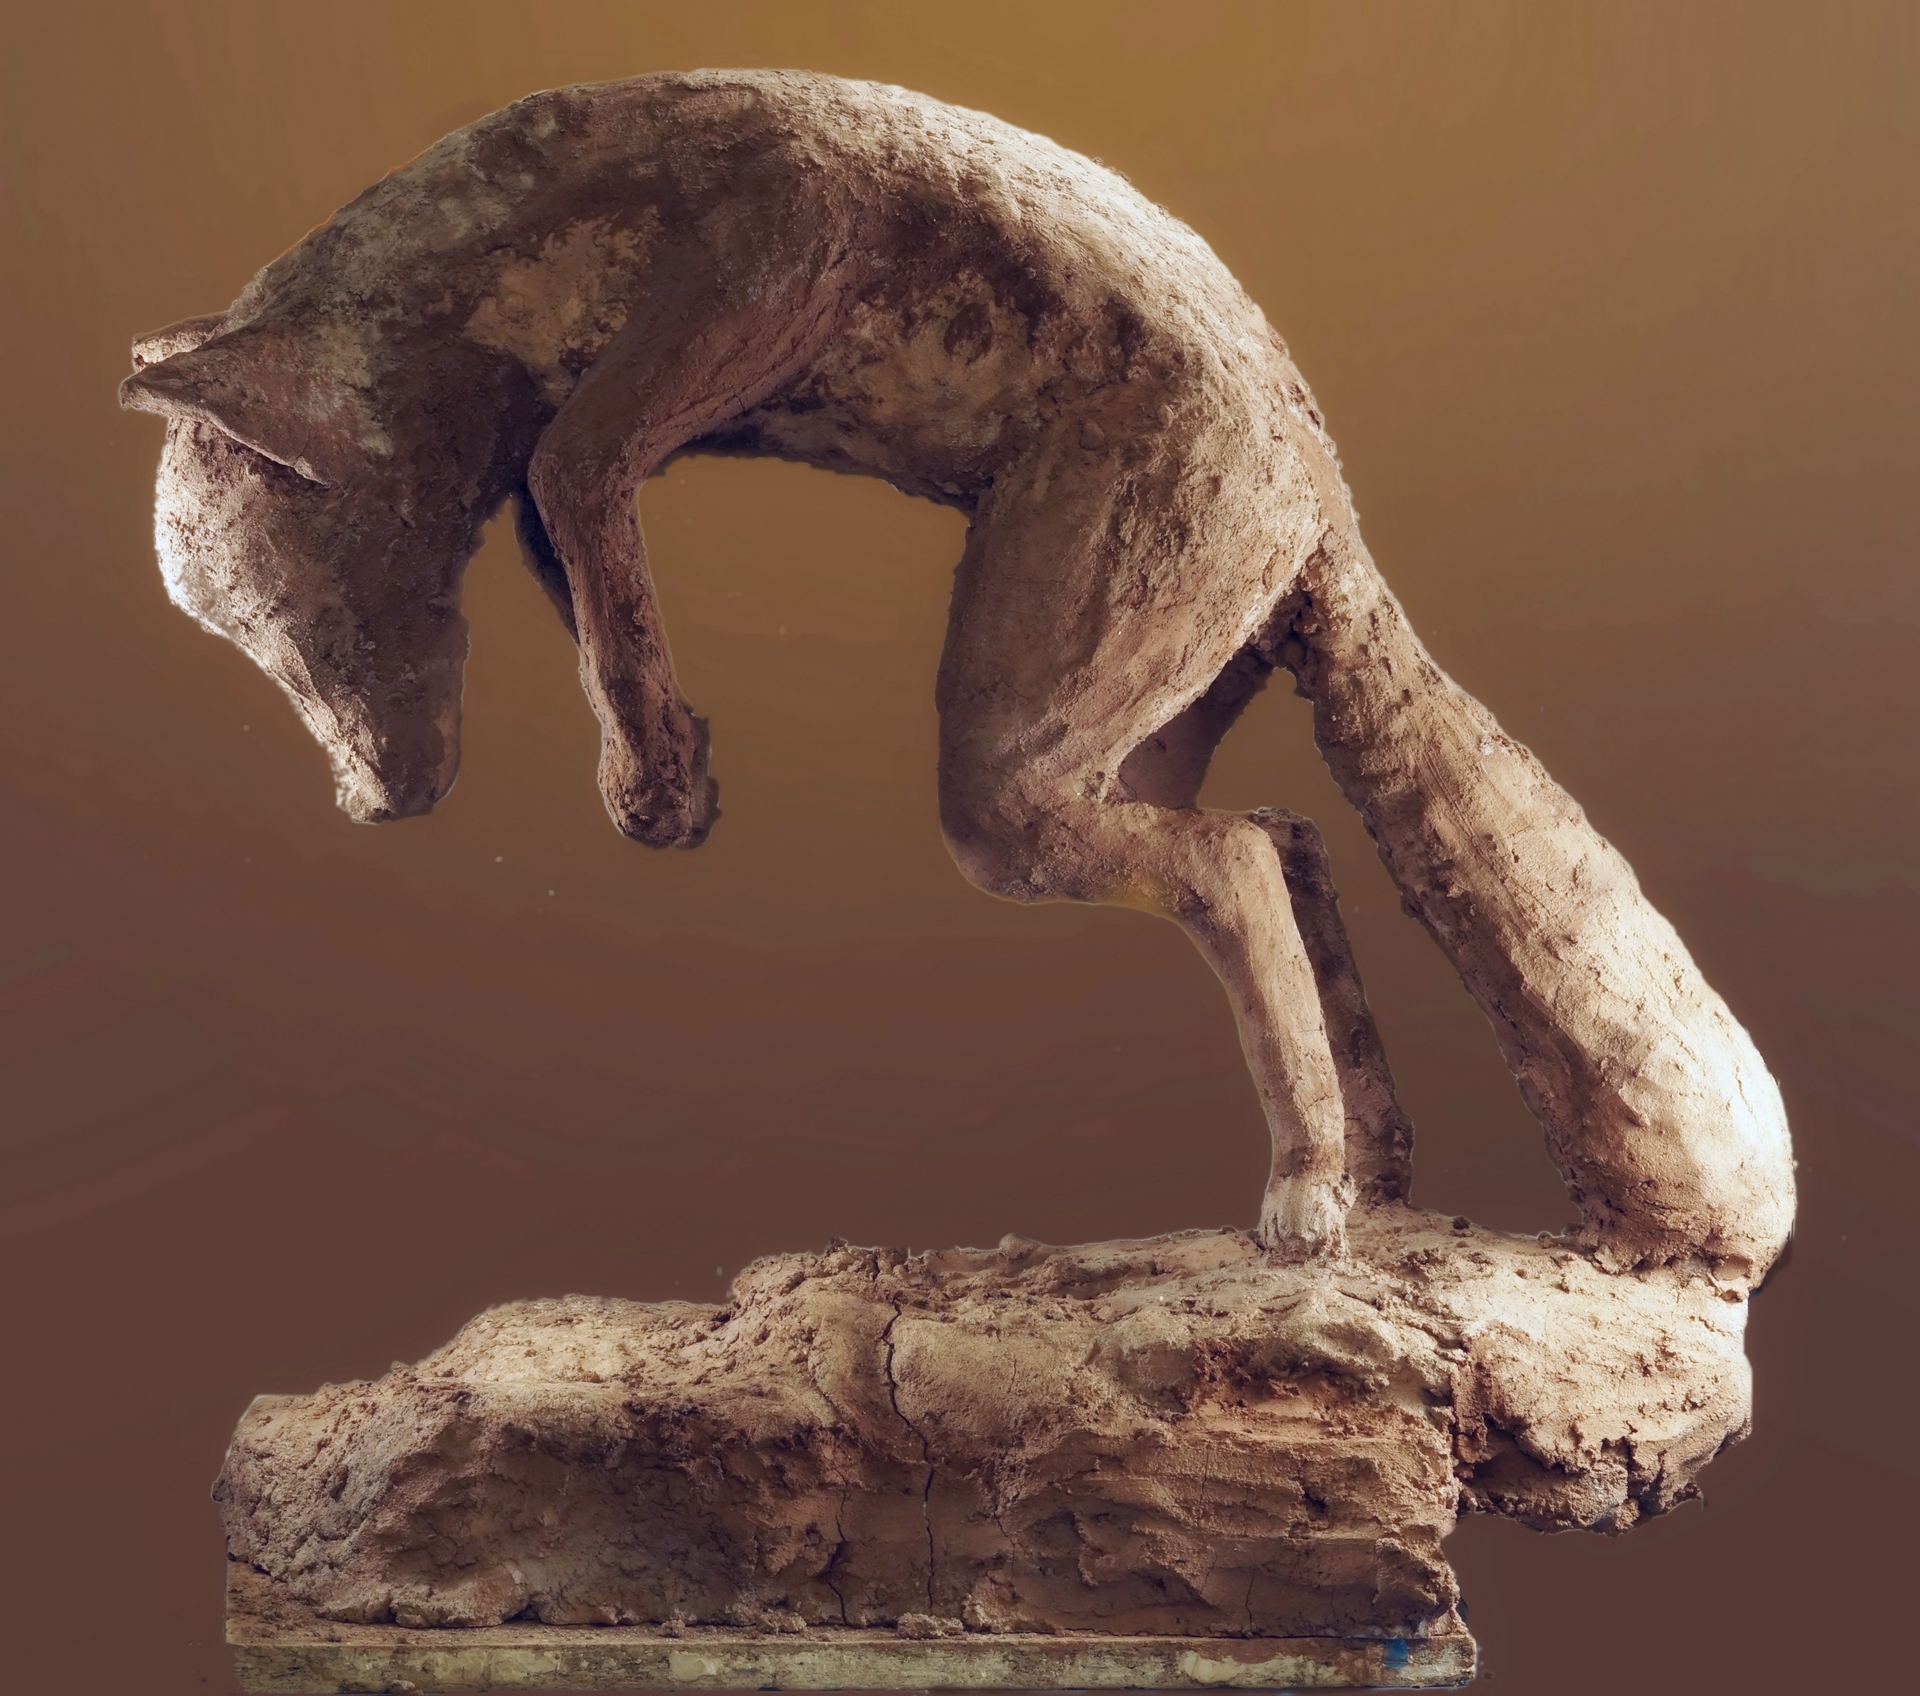 Julia Rosik - zdjęcie przedstawia rzeźbę skaczącego lisa, polującego na swoją ofiarę, wykonanego w technice betonu z narzutu.